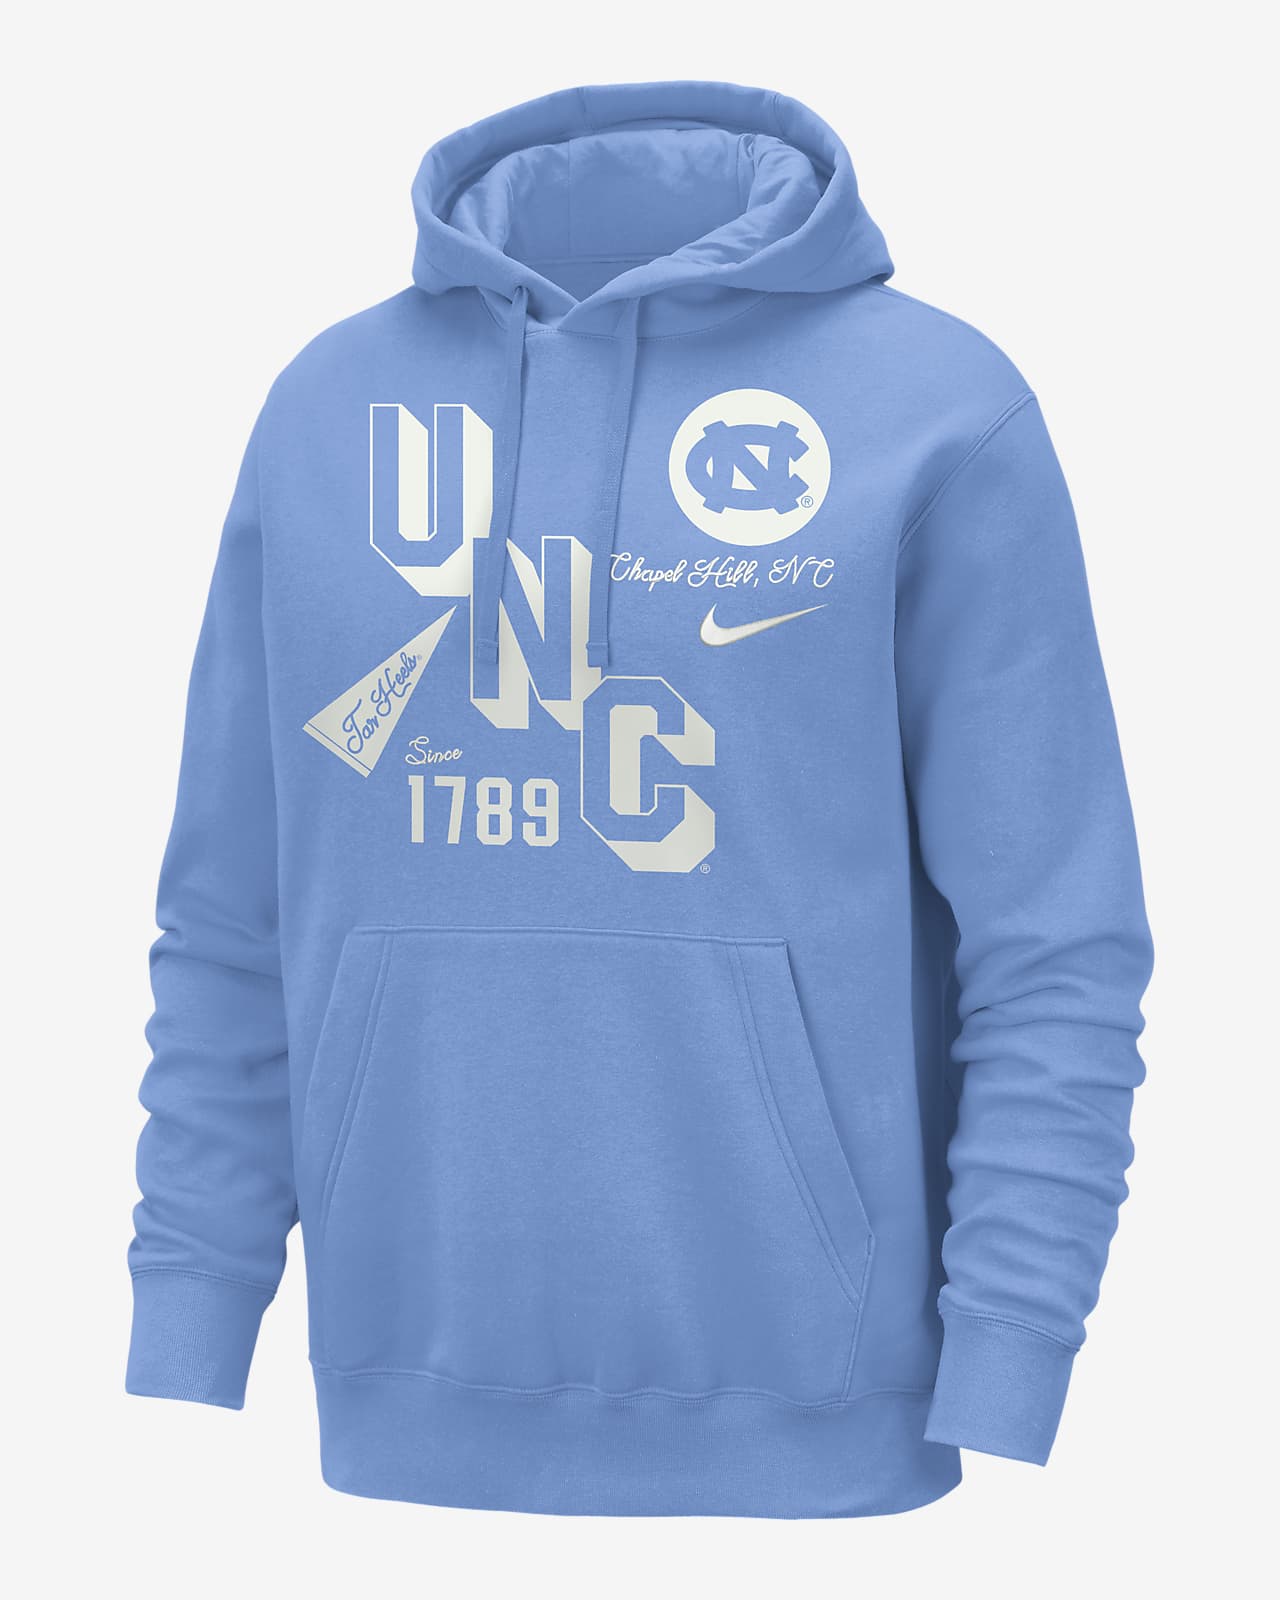 UNC Club Men's Nike College Hoodie